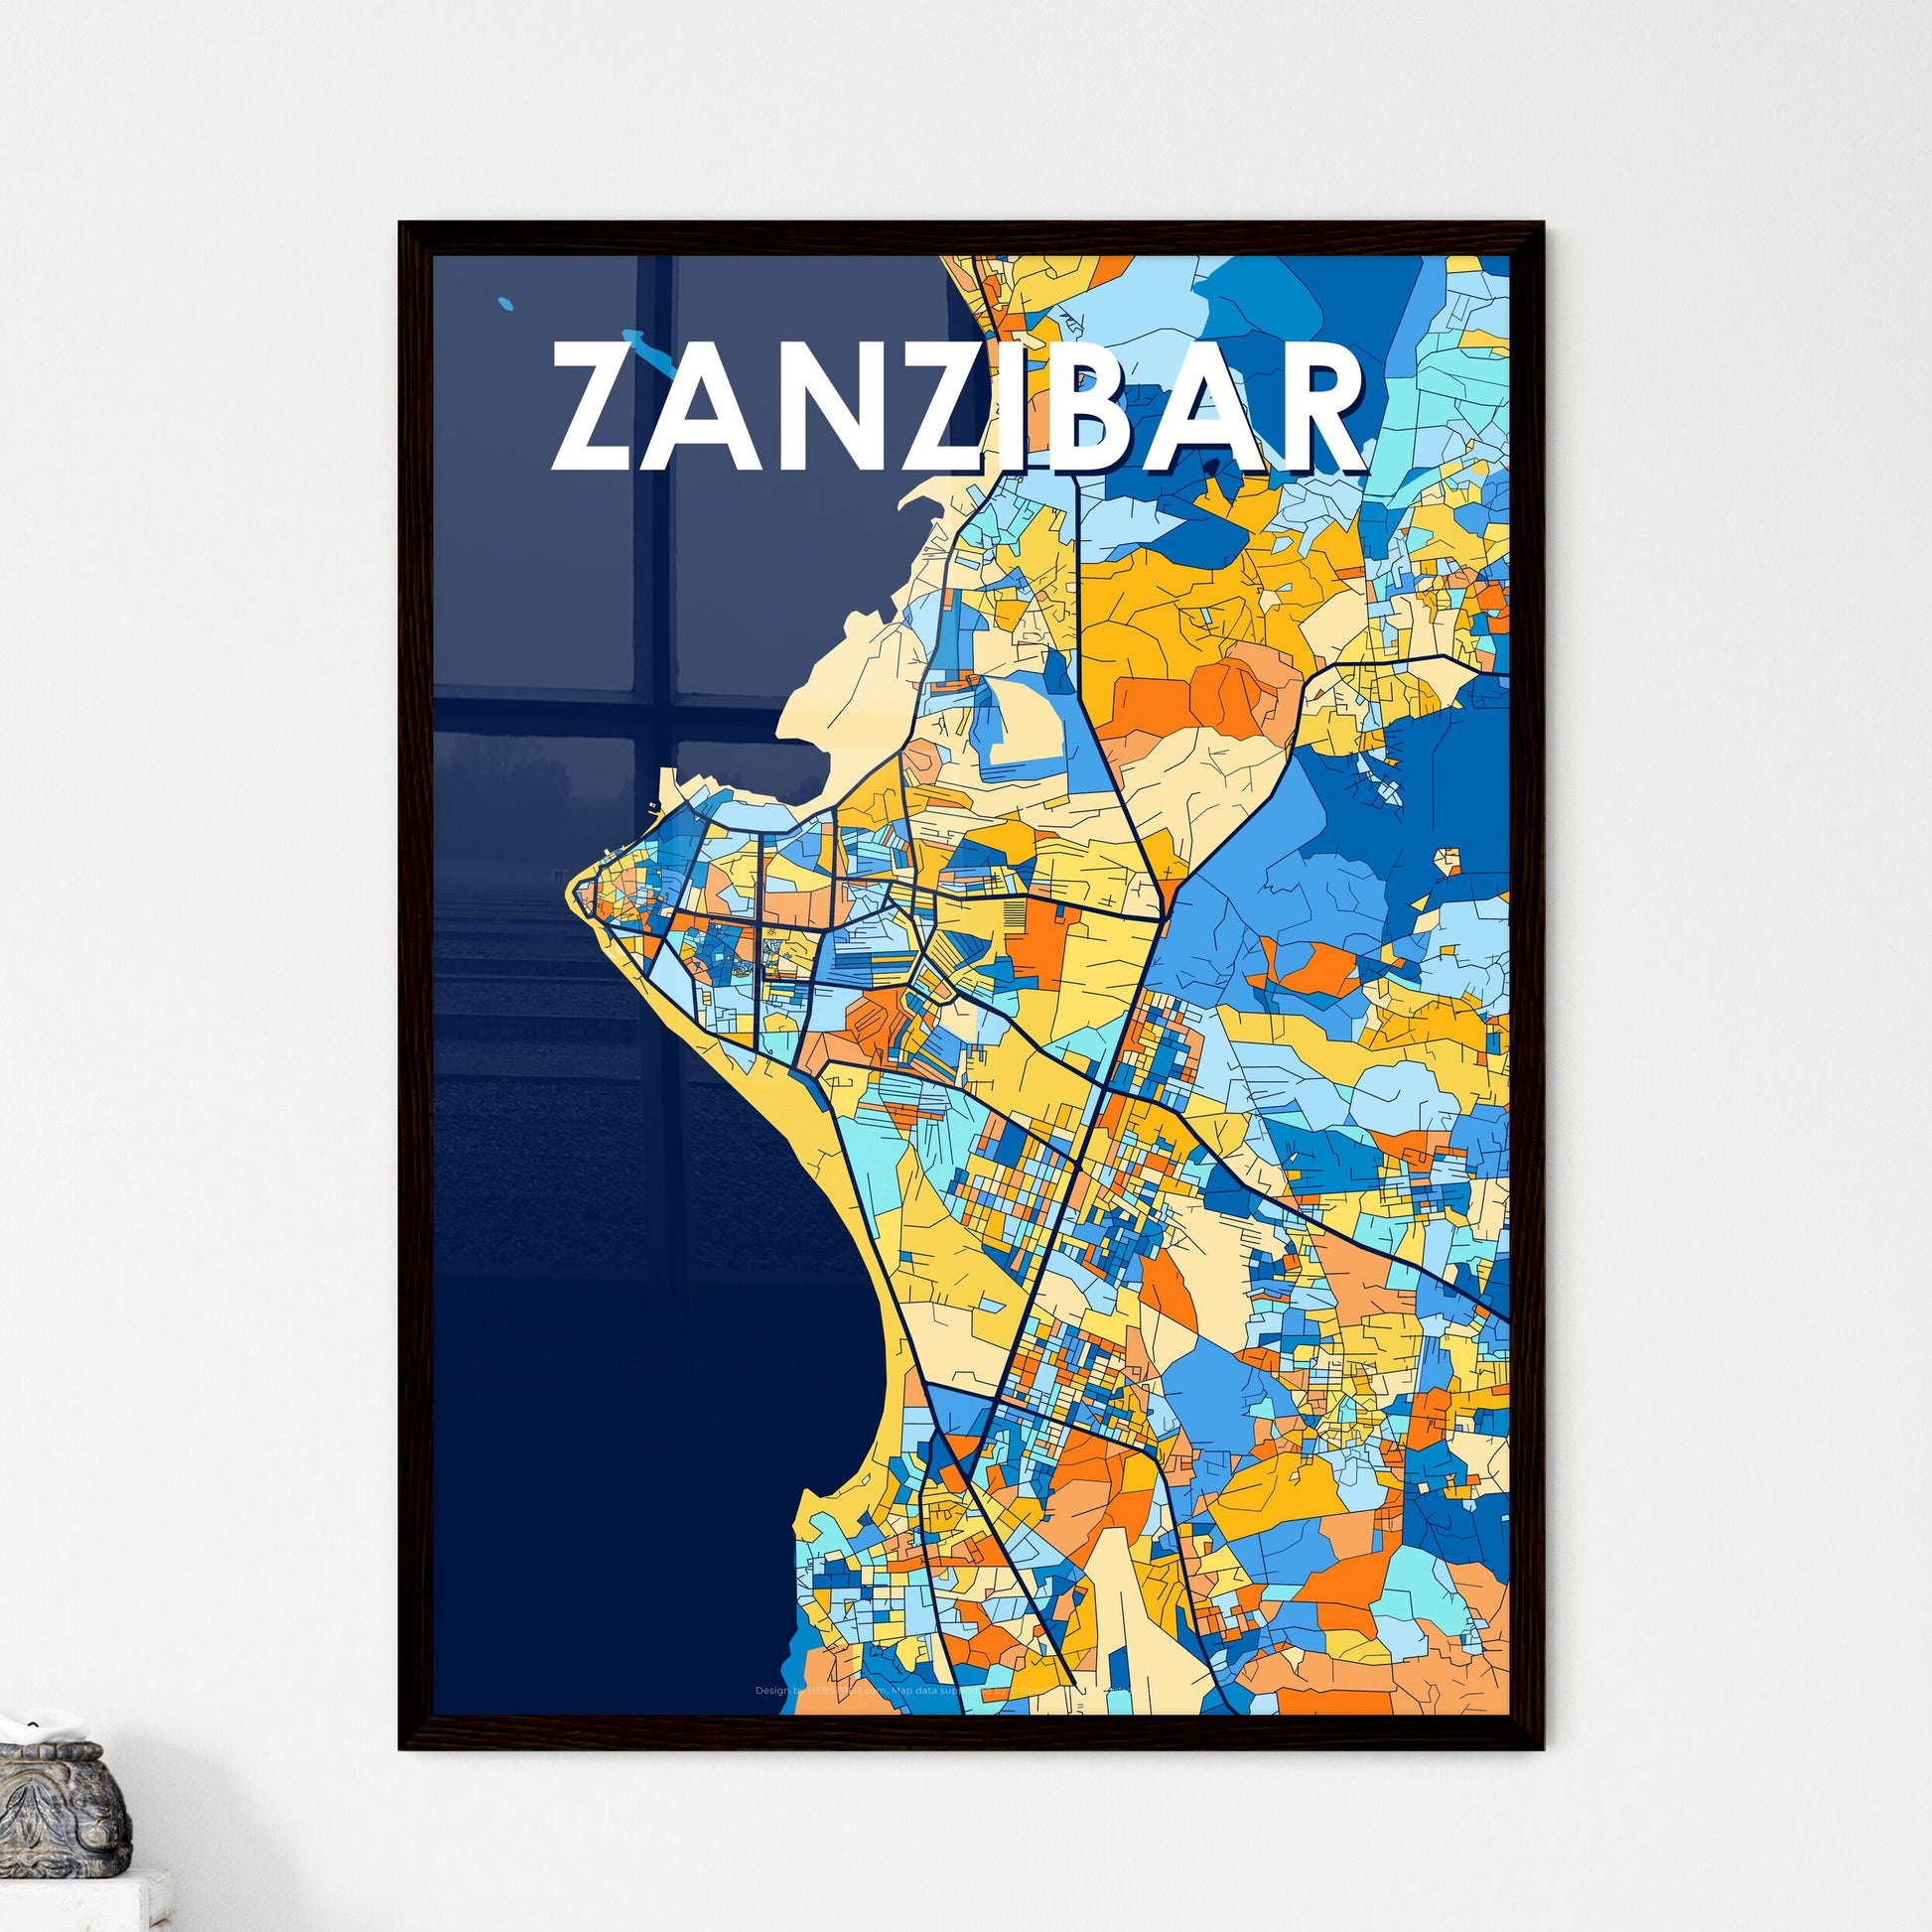 ZANZIBAR TANZANIA Vibrant Colorful Art Map Poster Blue Orange